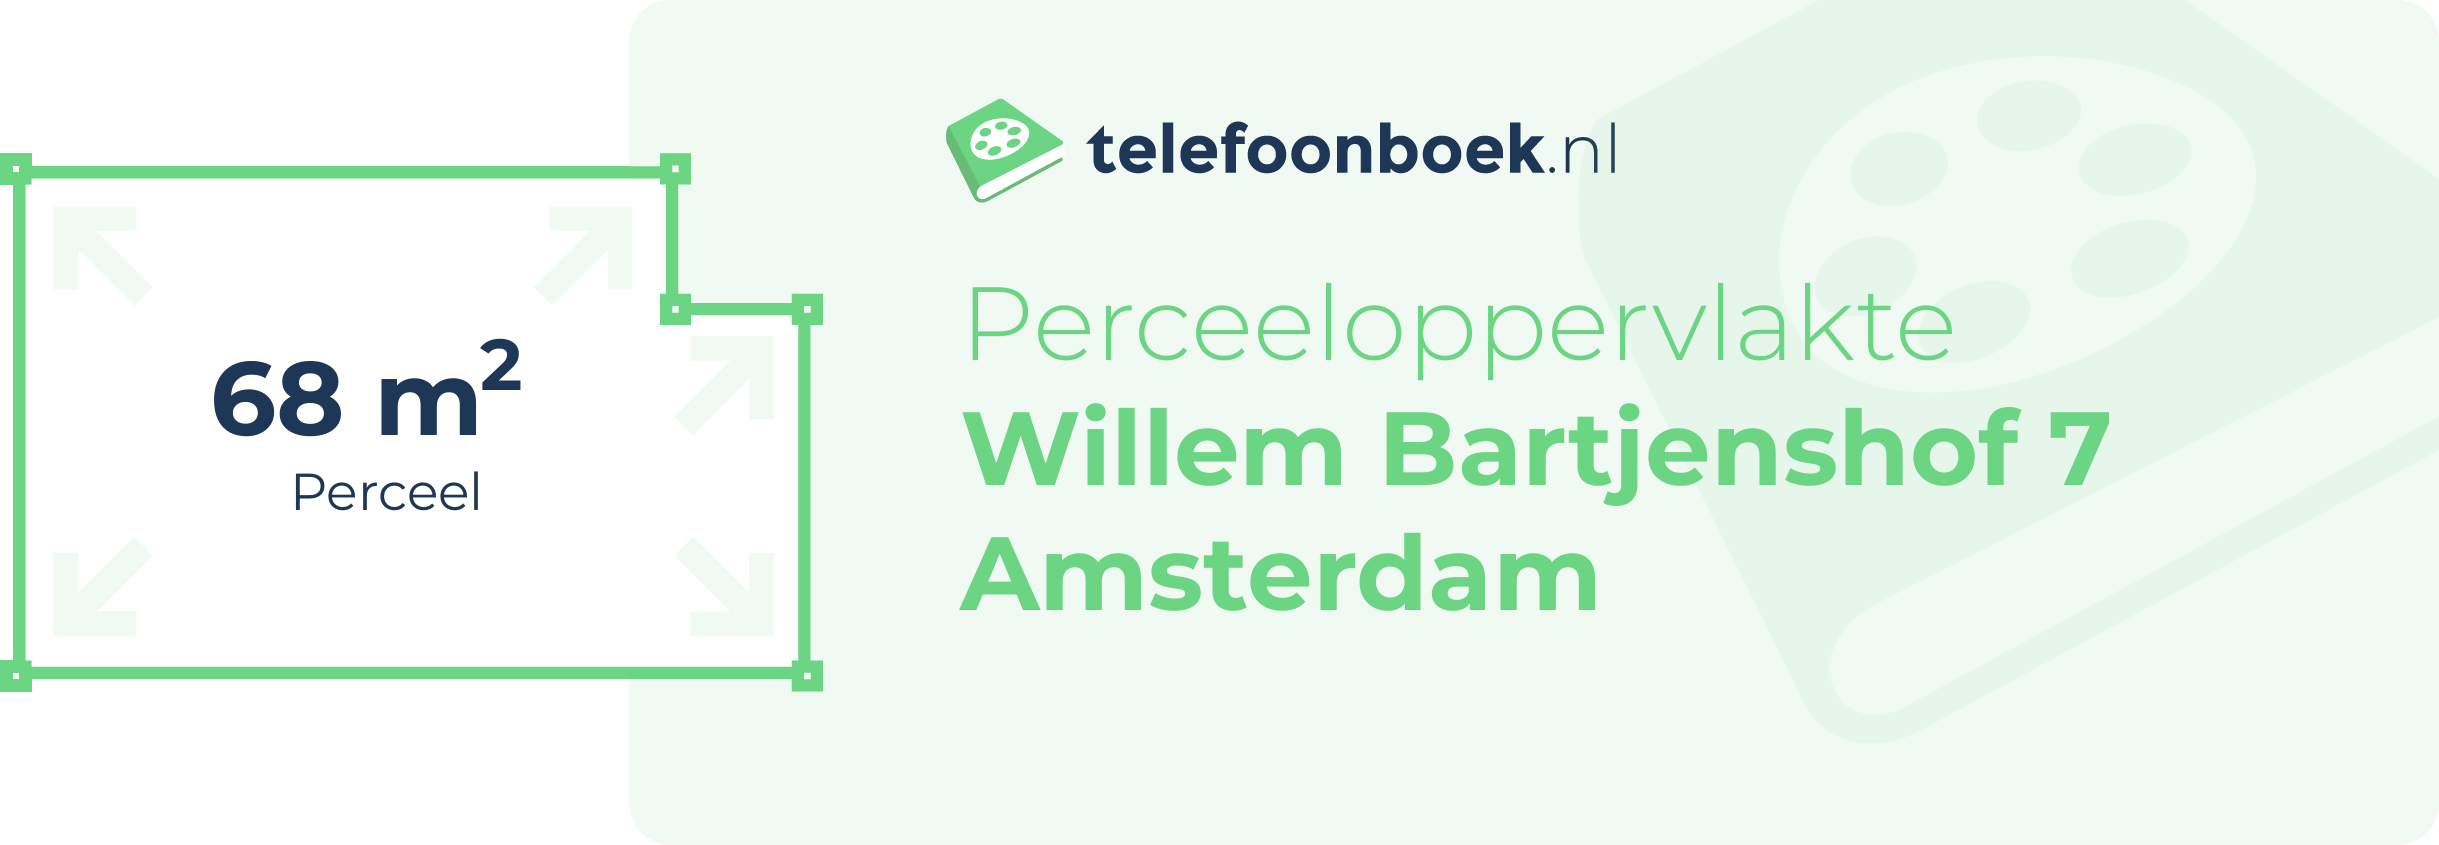 Perceeloppervlakte Willem Bartjenshof 7 Amsterdam